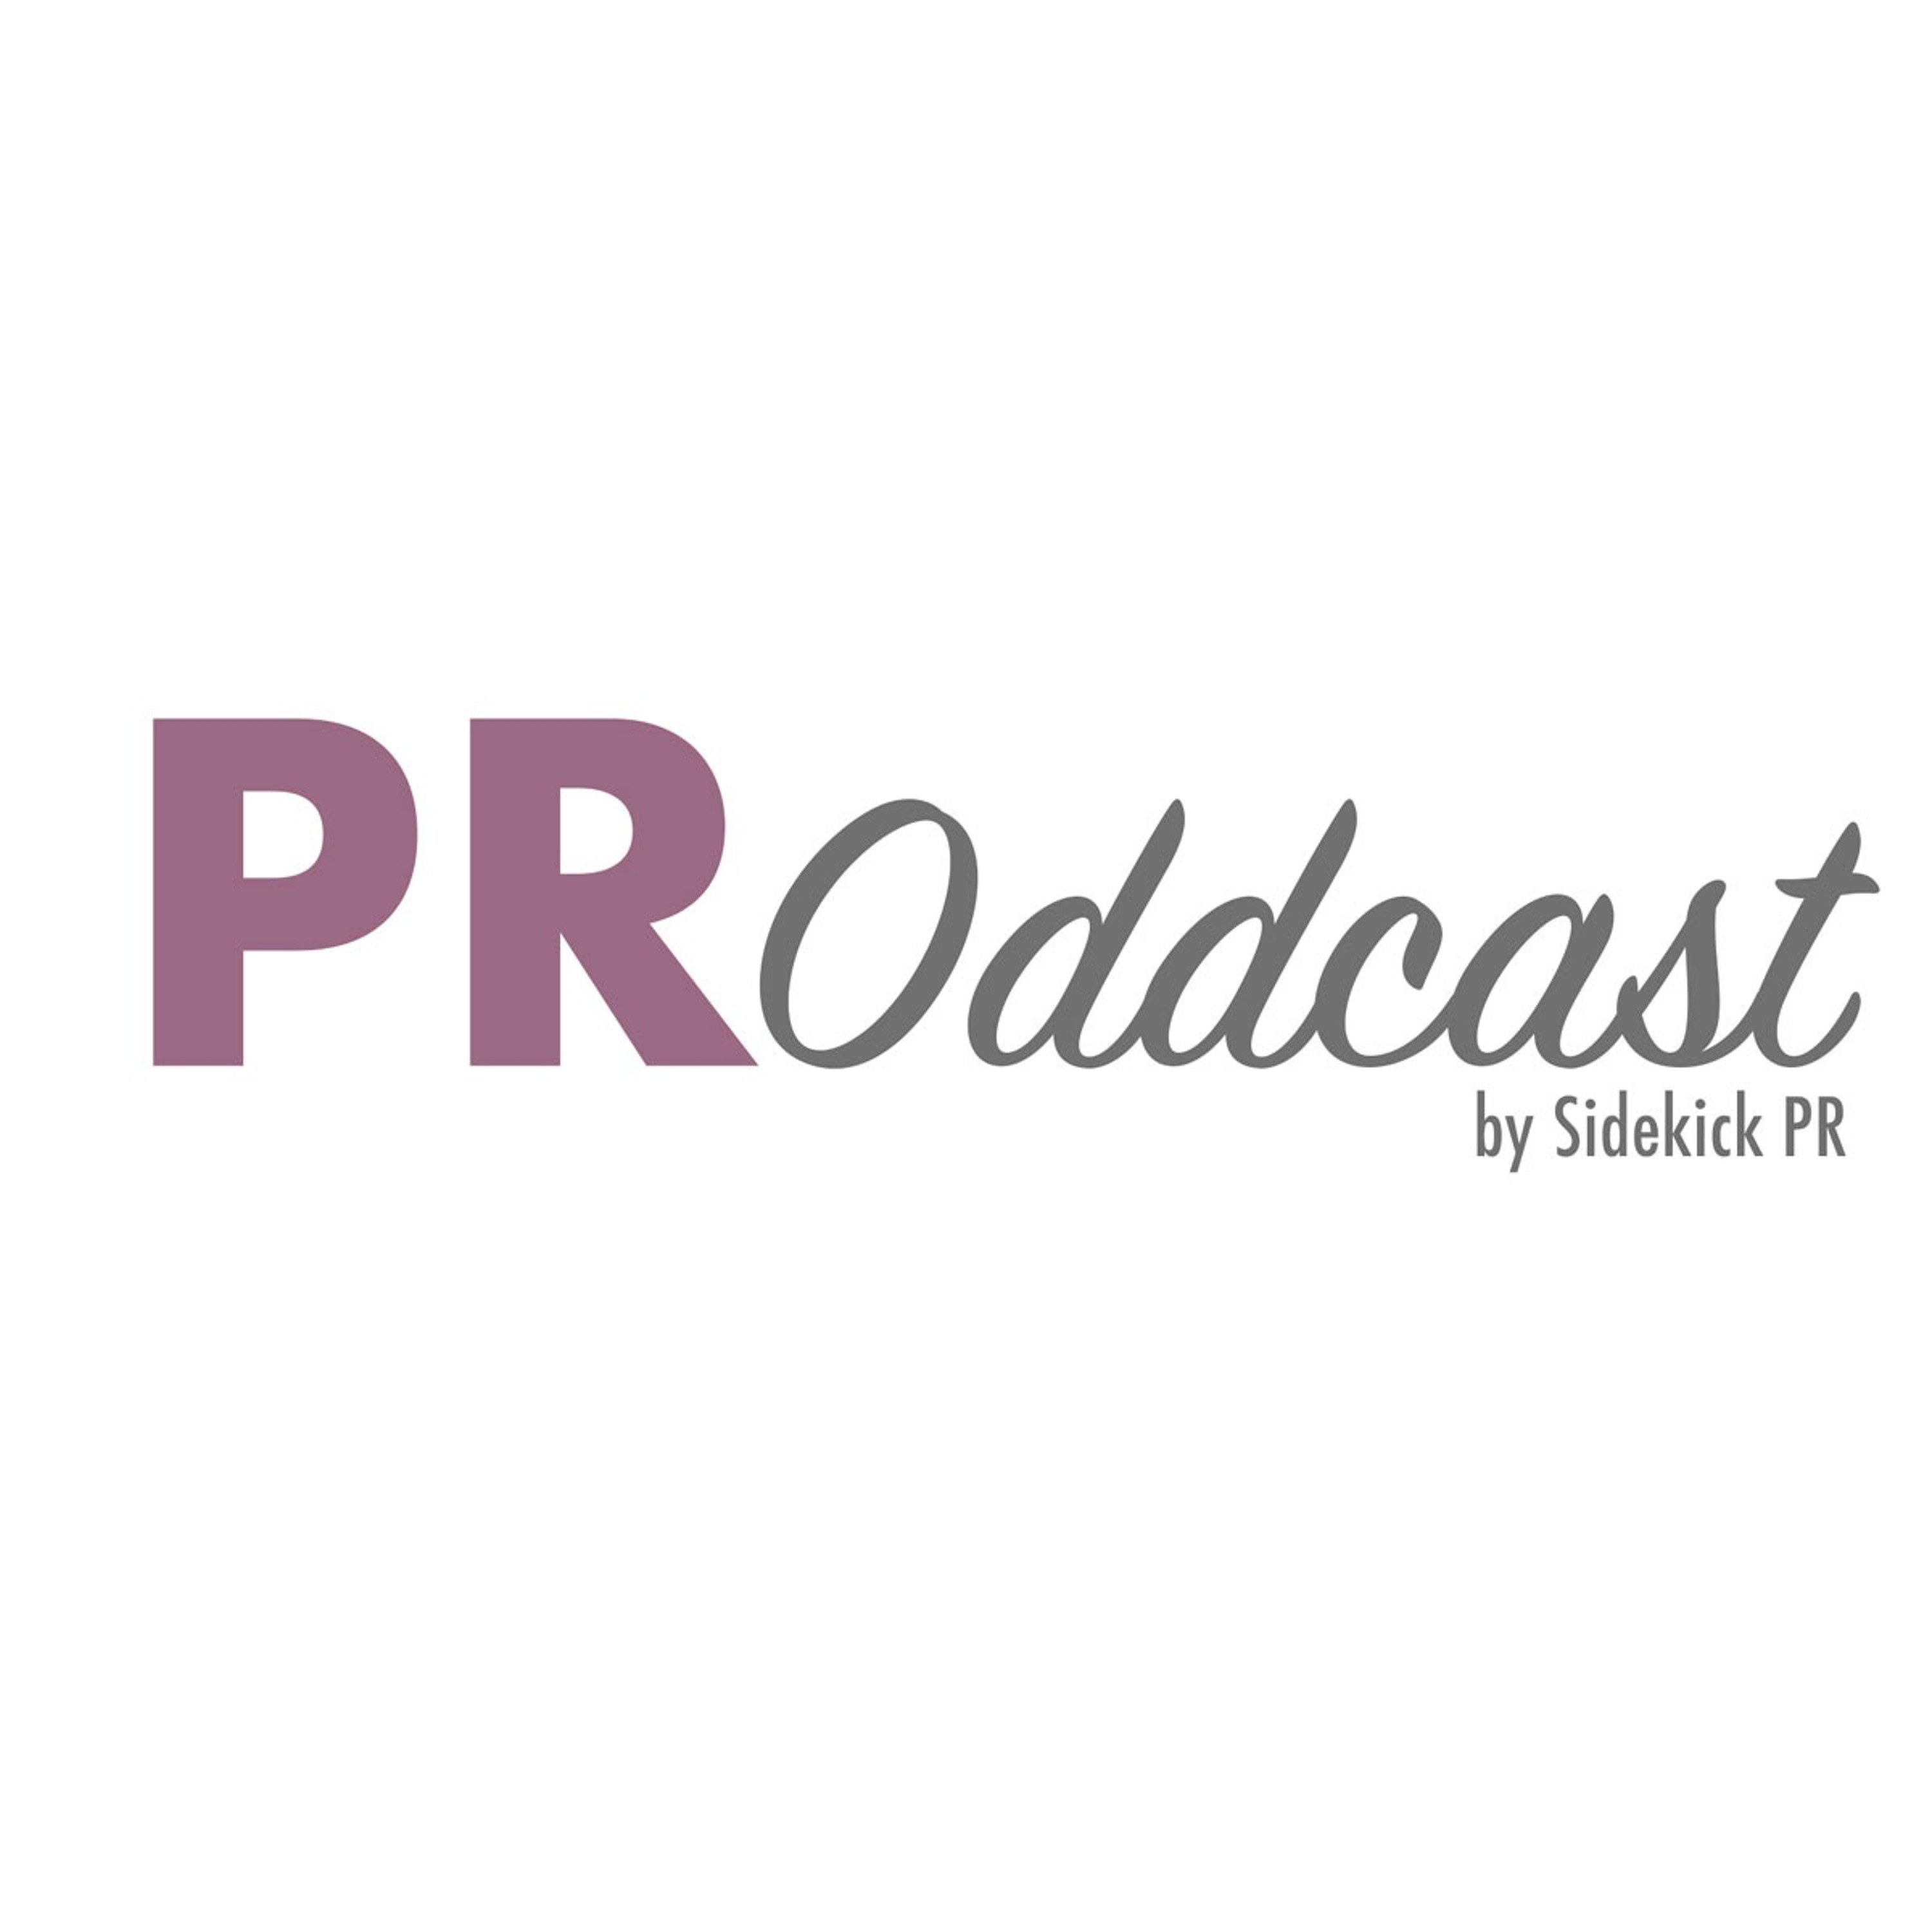 PR Oddcast – by Sidekick PR (Episode 4)